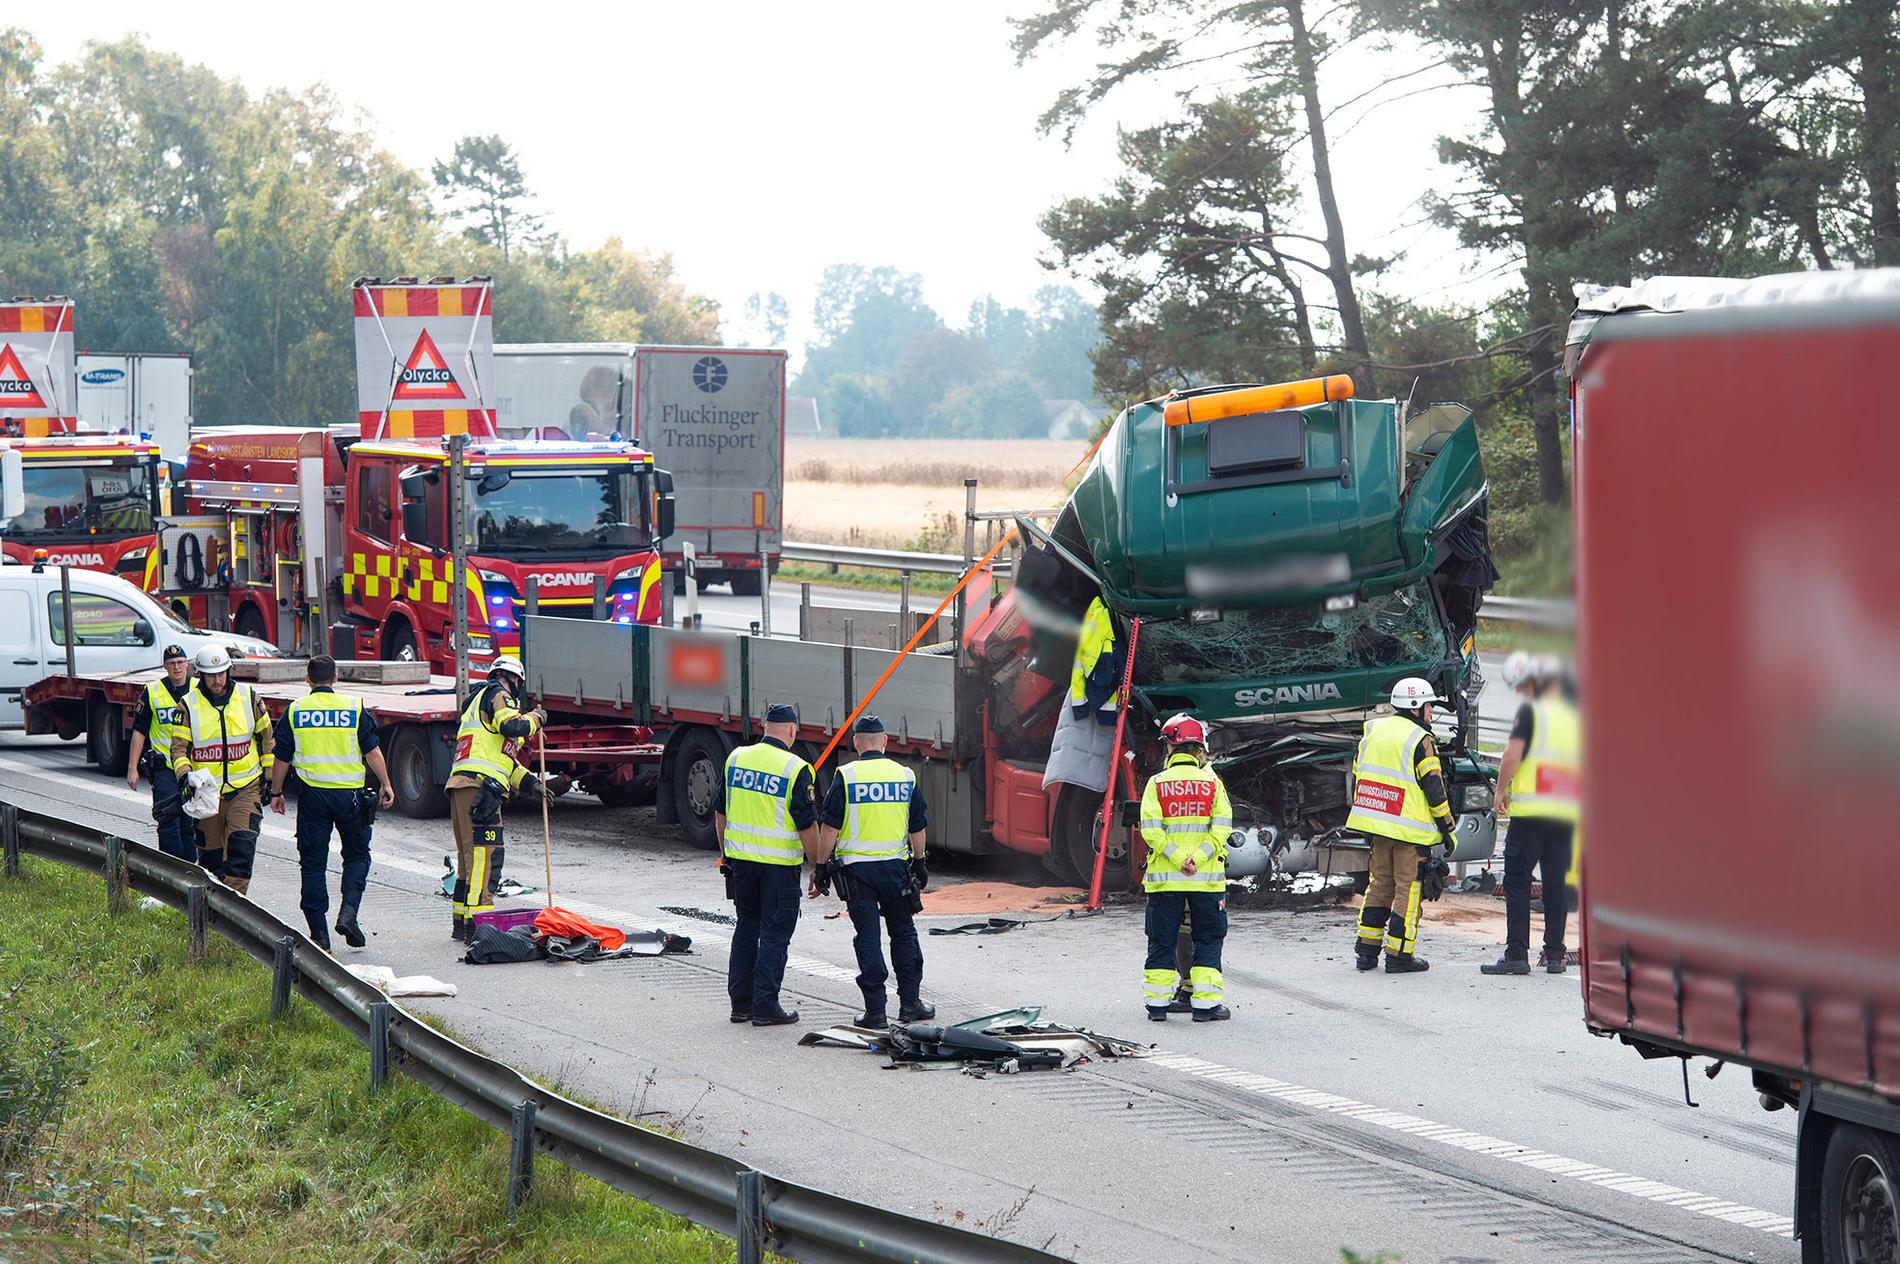 Olycka inträffade på E6 utanför Landskrona. 